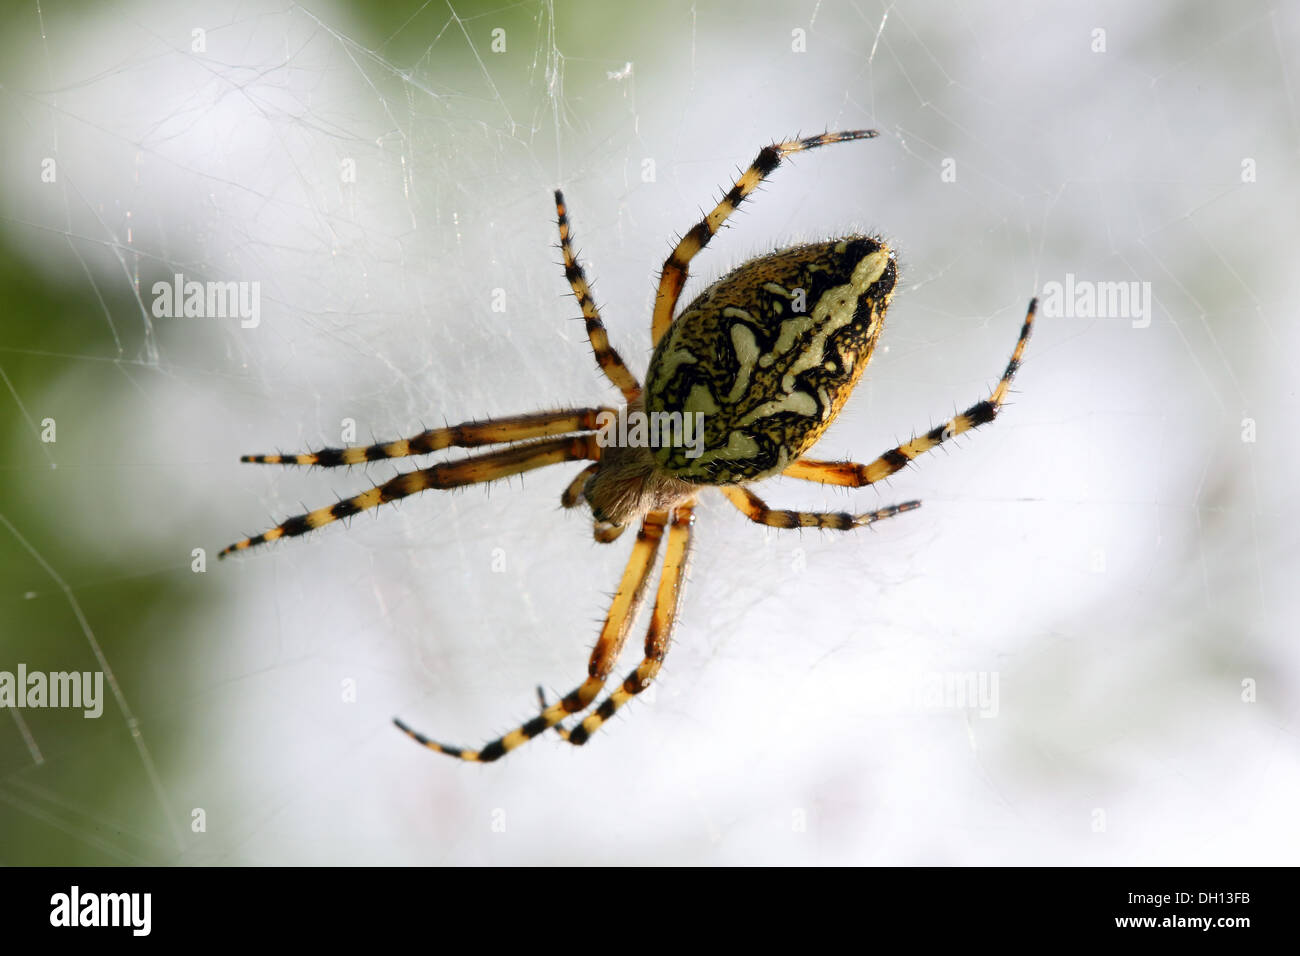 Aculepeira ceropegia, Oak Spider Stock Photo